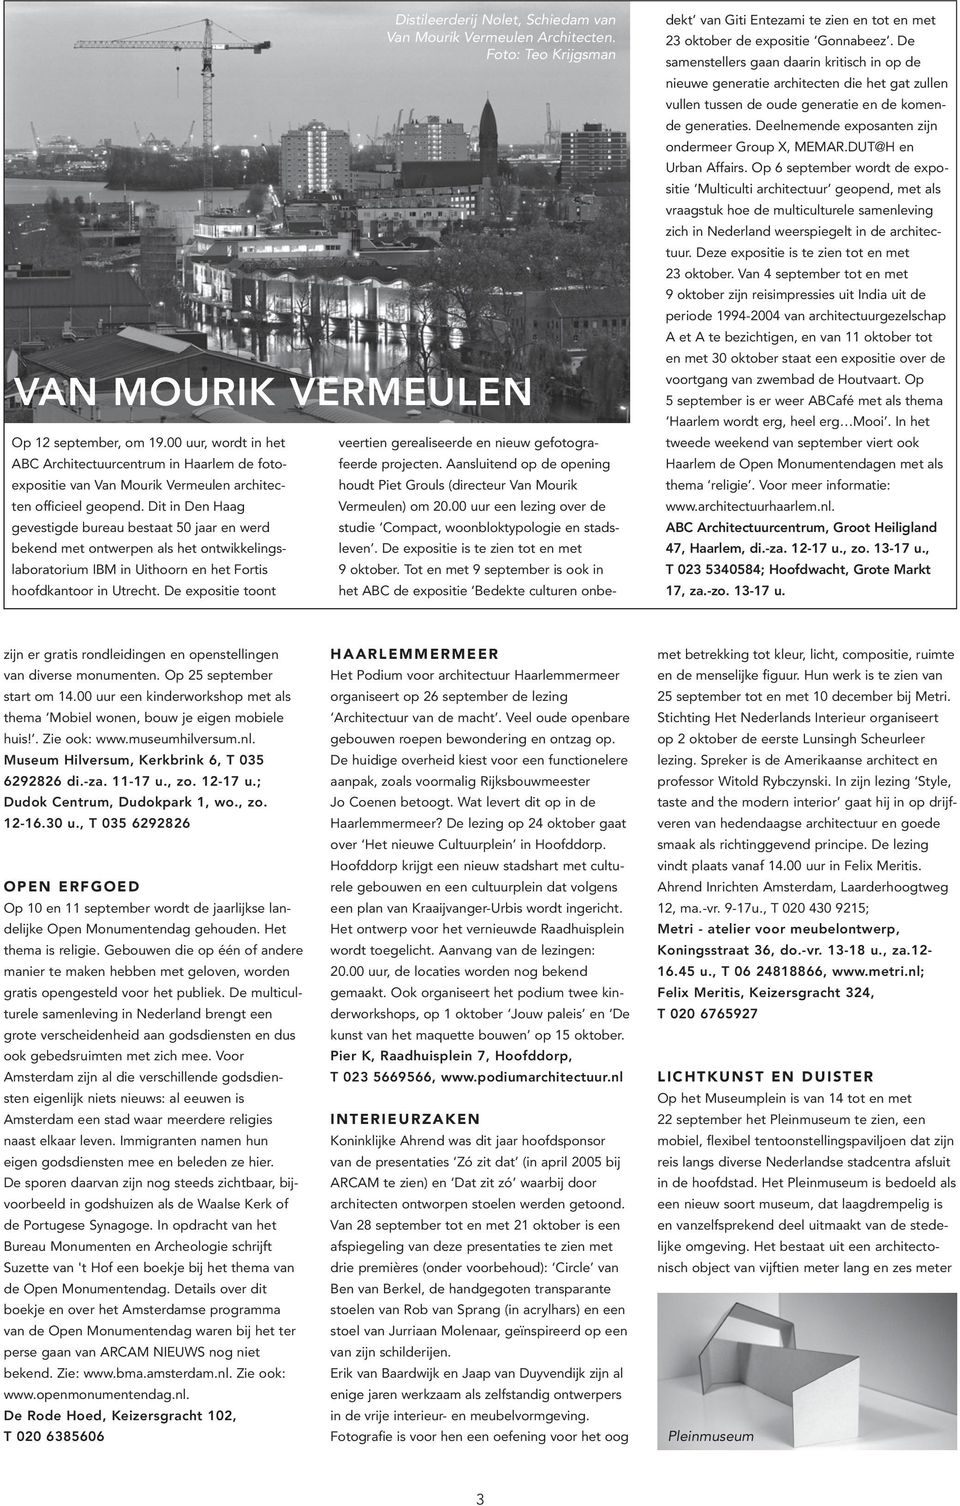 De expositie toont Distileerderij Nolet, Schiedam van Van Mourik Vermeulen Architecten. Foto: Teo Krijgsman VAN MOURIK VERMEULEN veertien gerealiseerde en nieuw gefotografeerde projecten.